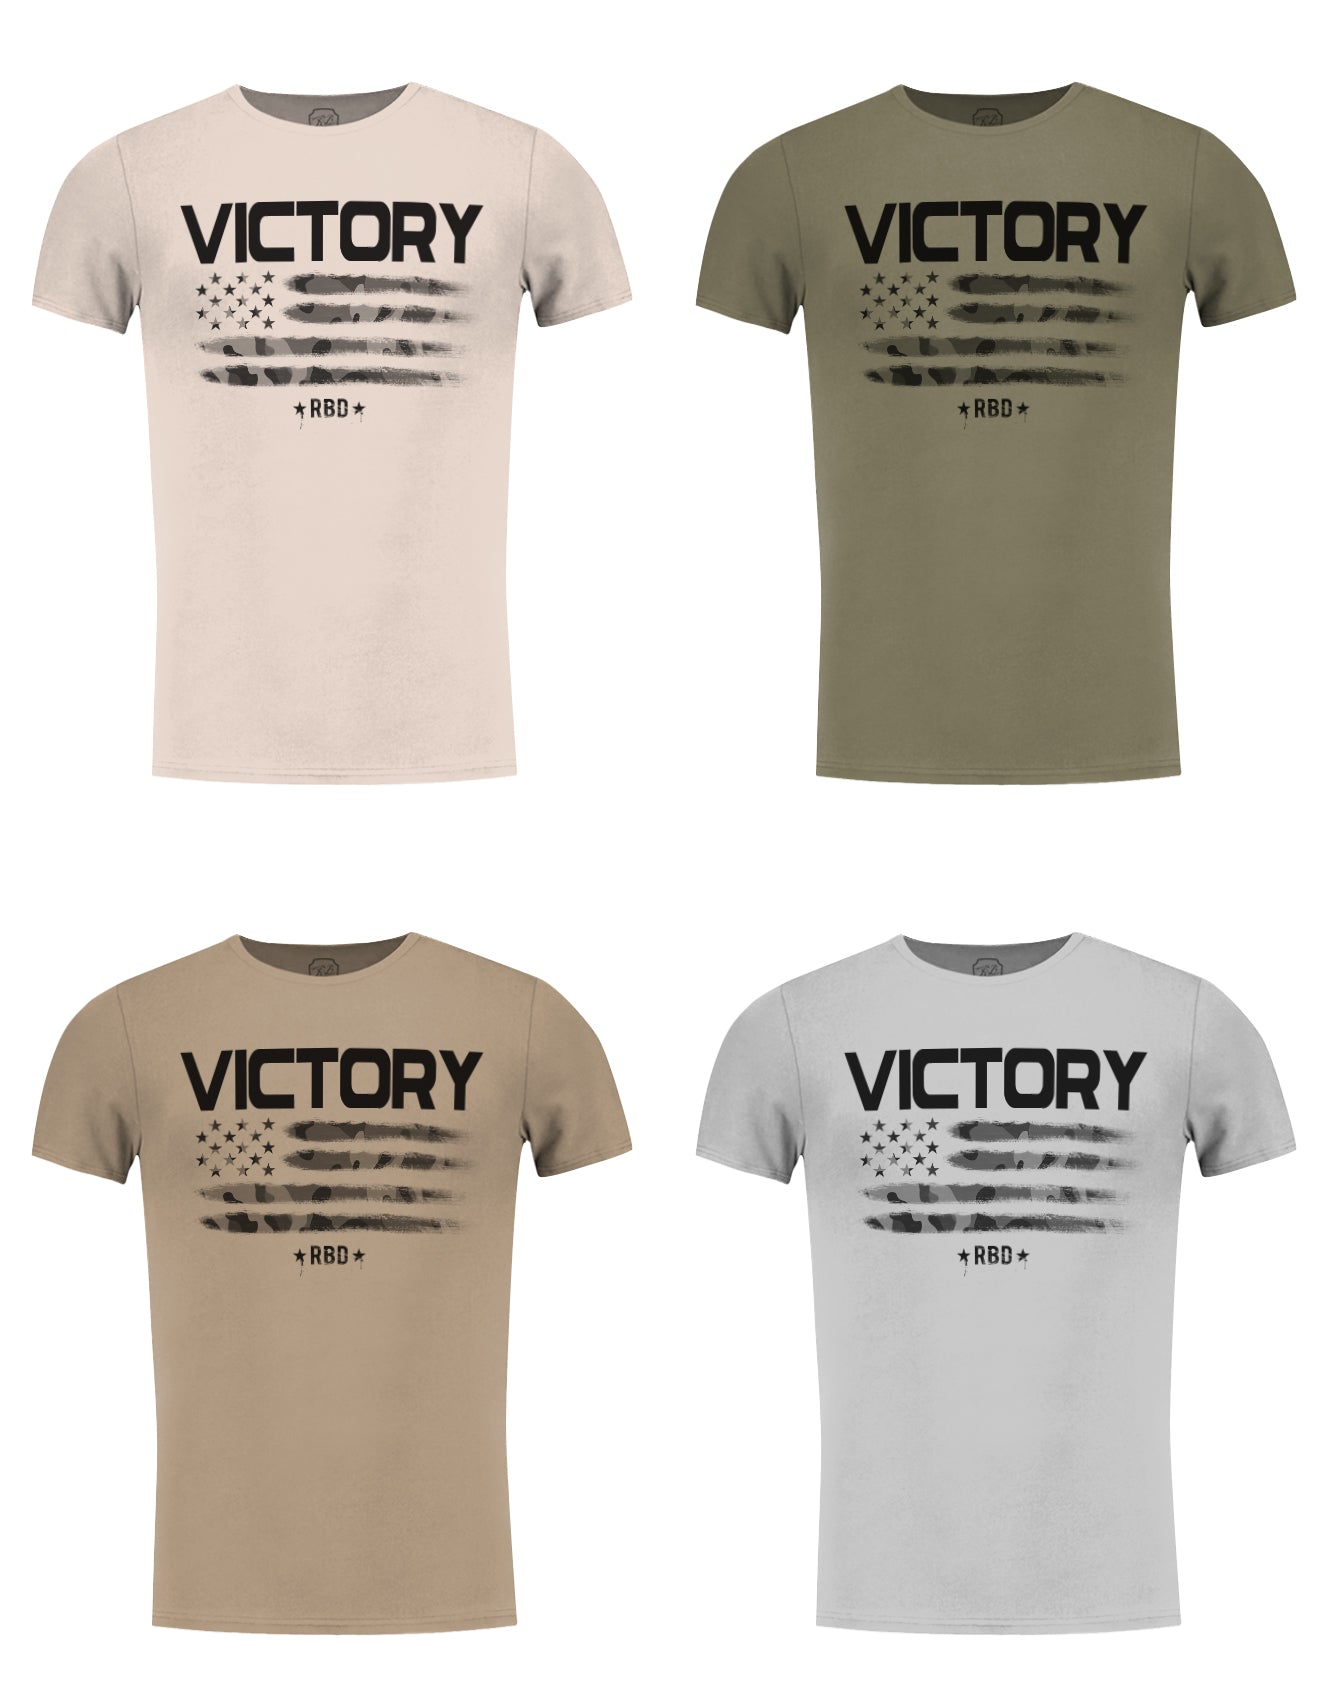 Men's T-shirt "Victory" Khaki Gray Beige / Color Option / MD940